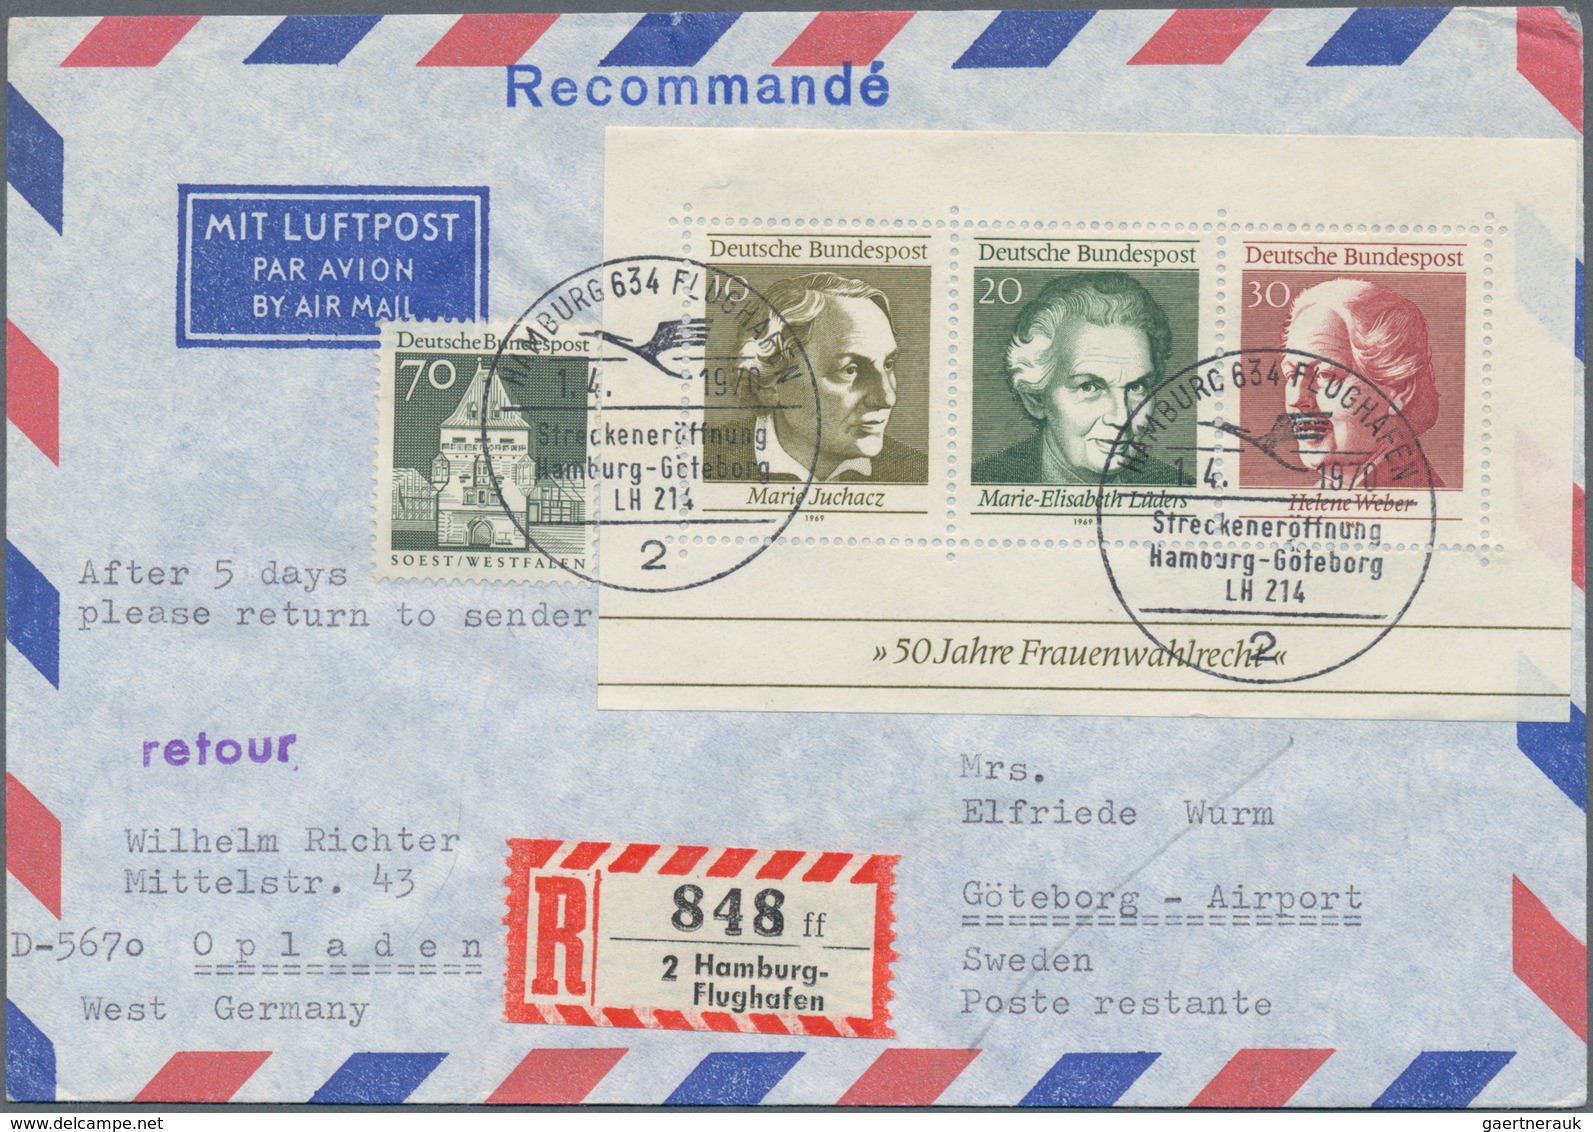 Bundesrepublik Deutschland: 1969/1979, vielseitiger Bestand von ca. 660 Briefen mit attraktiven Fran